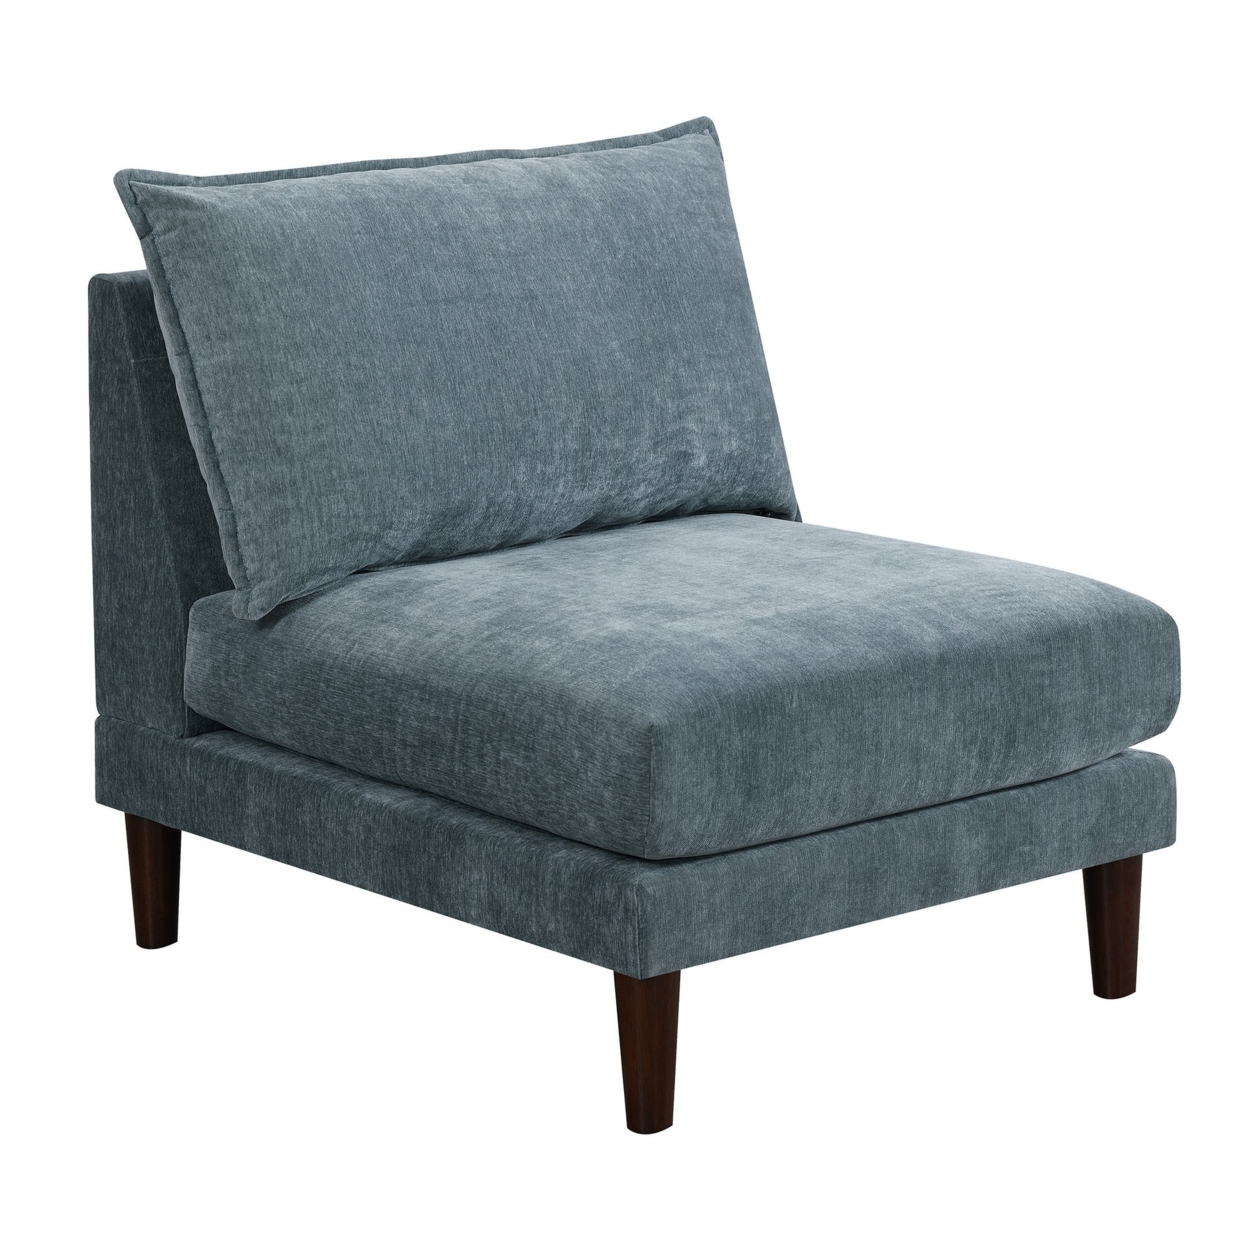 Rio 33 Inch Modular Armless Sofa Chair, Lumbar Cushion, Slate Blue Fabric- Saltoro Sherpi